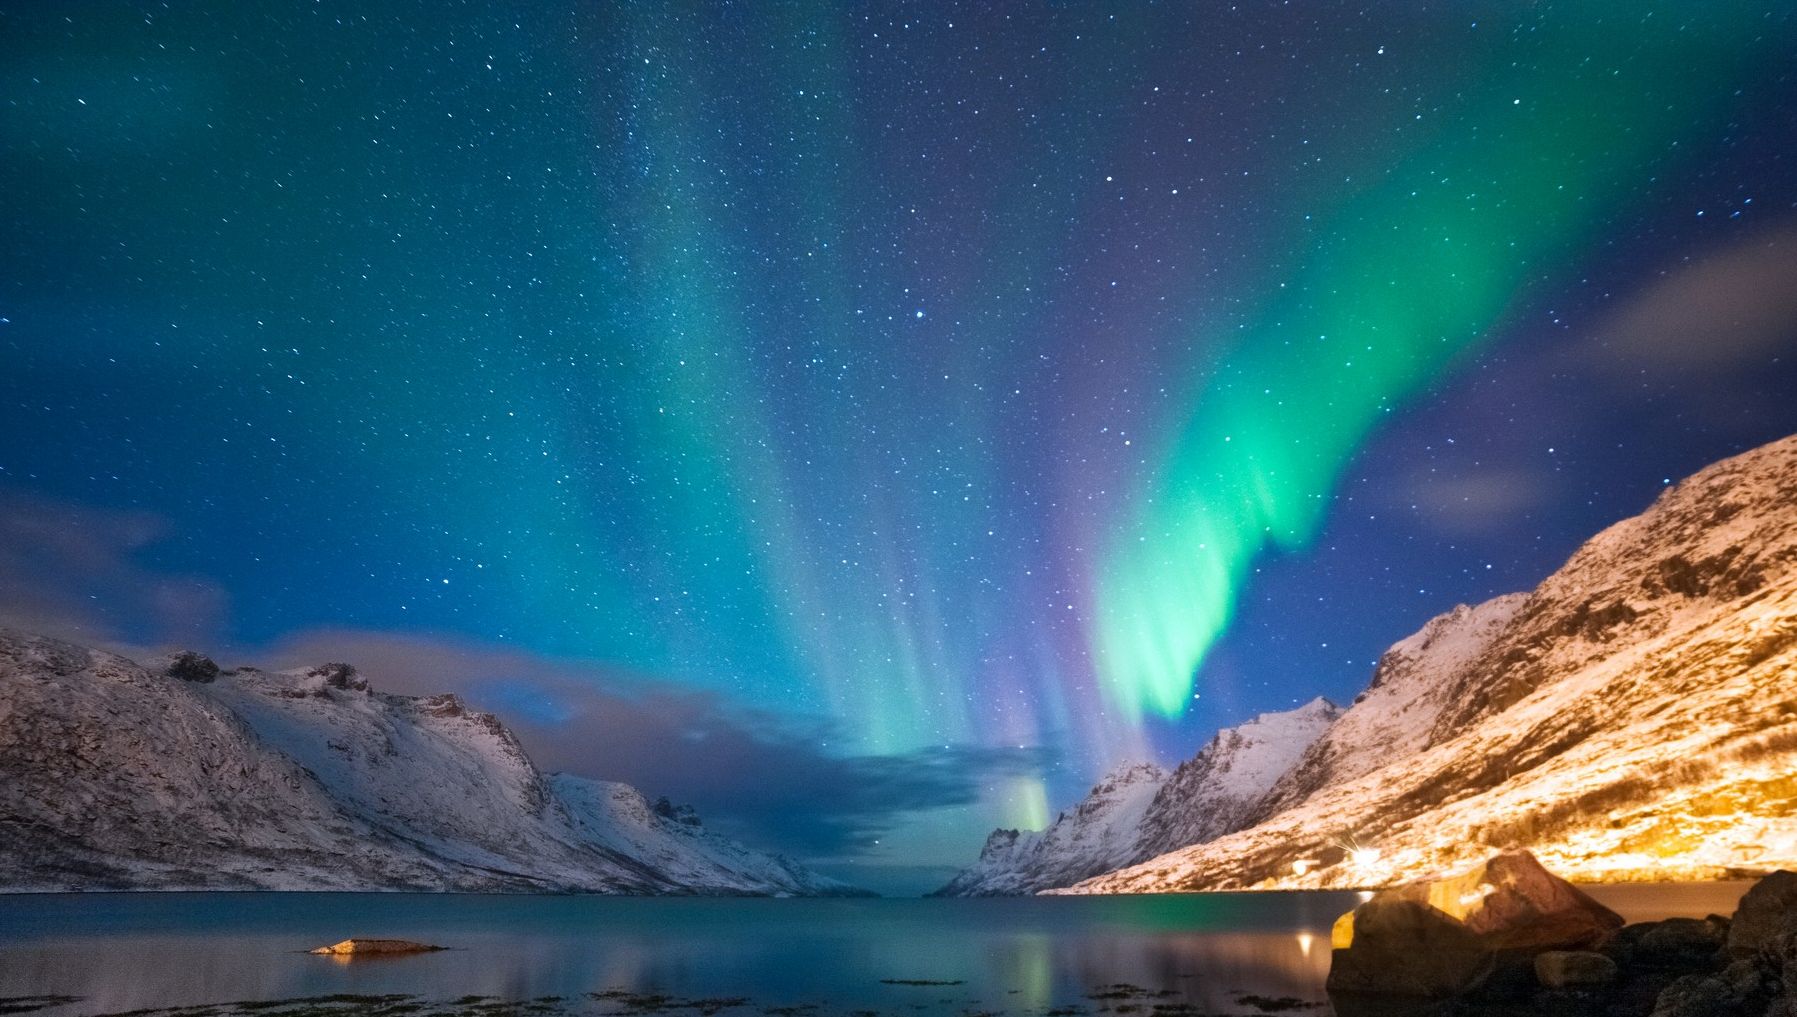 donde-como-cuando-ver-auroras-boreales-noruega-tromso-unaideaunviaje-02